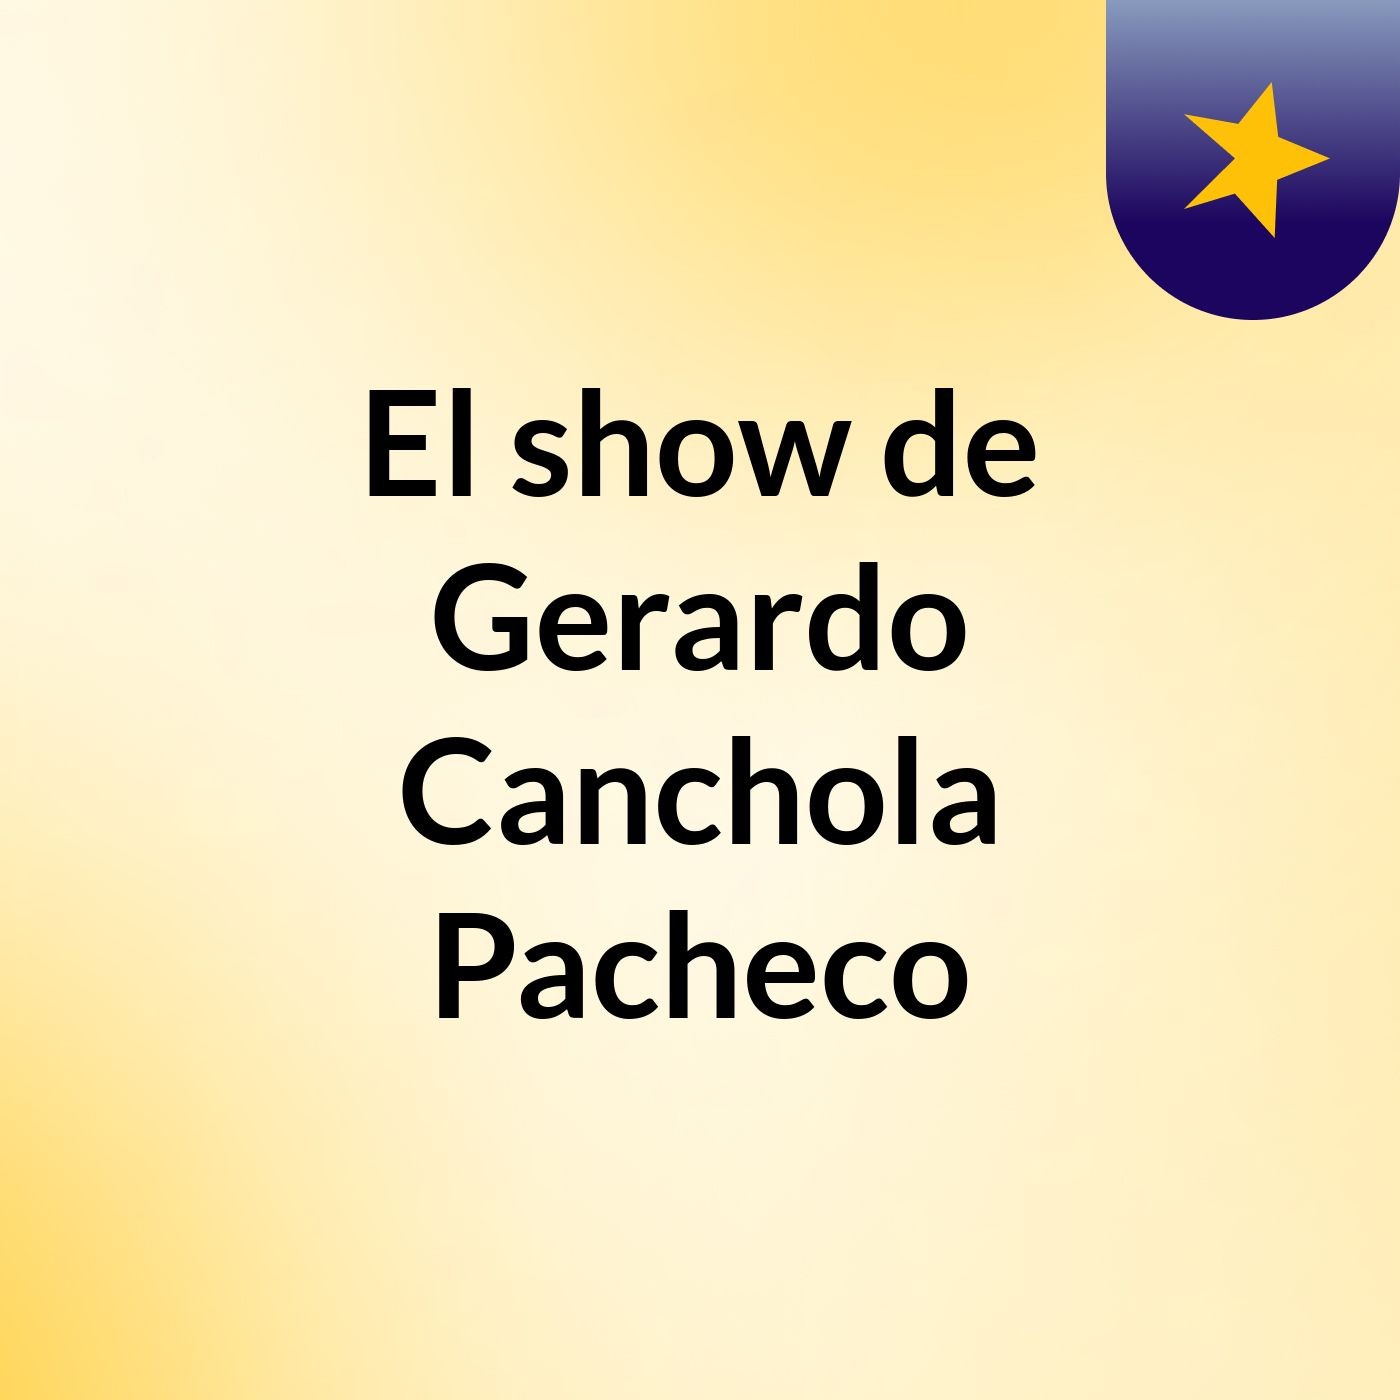 El show de Gerardo Canchola Pacheco